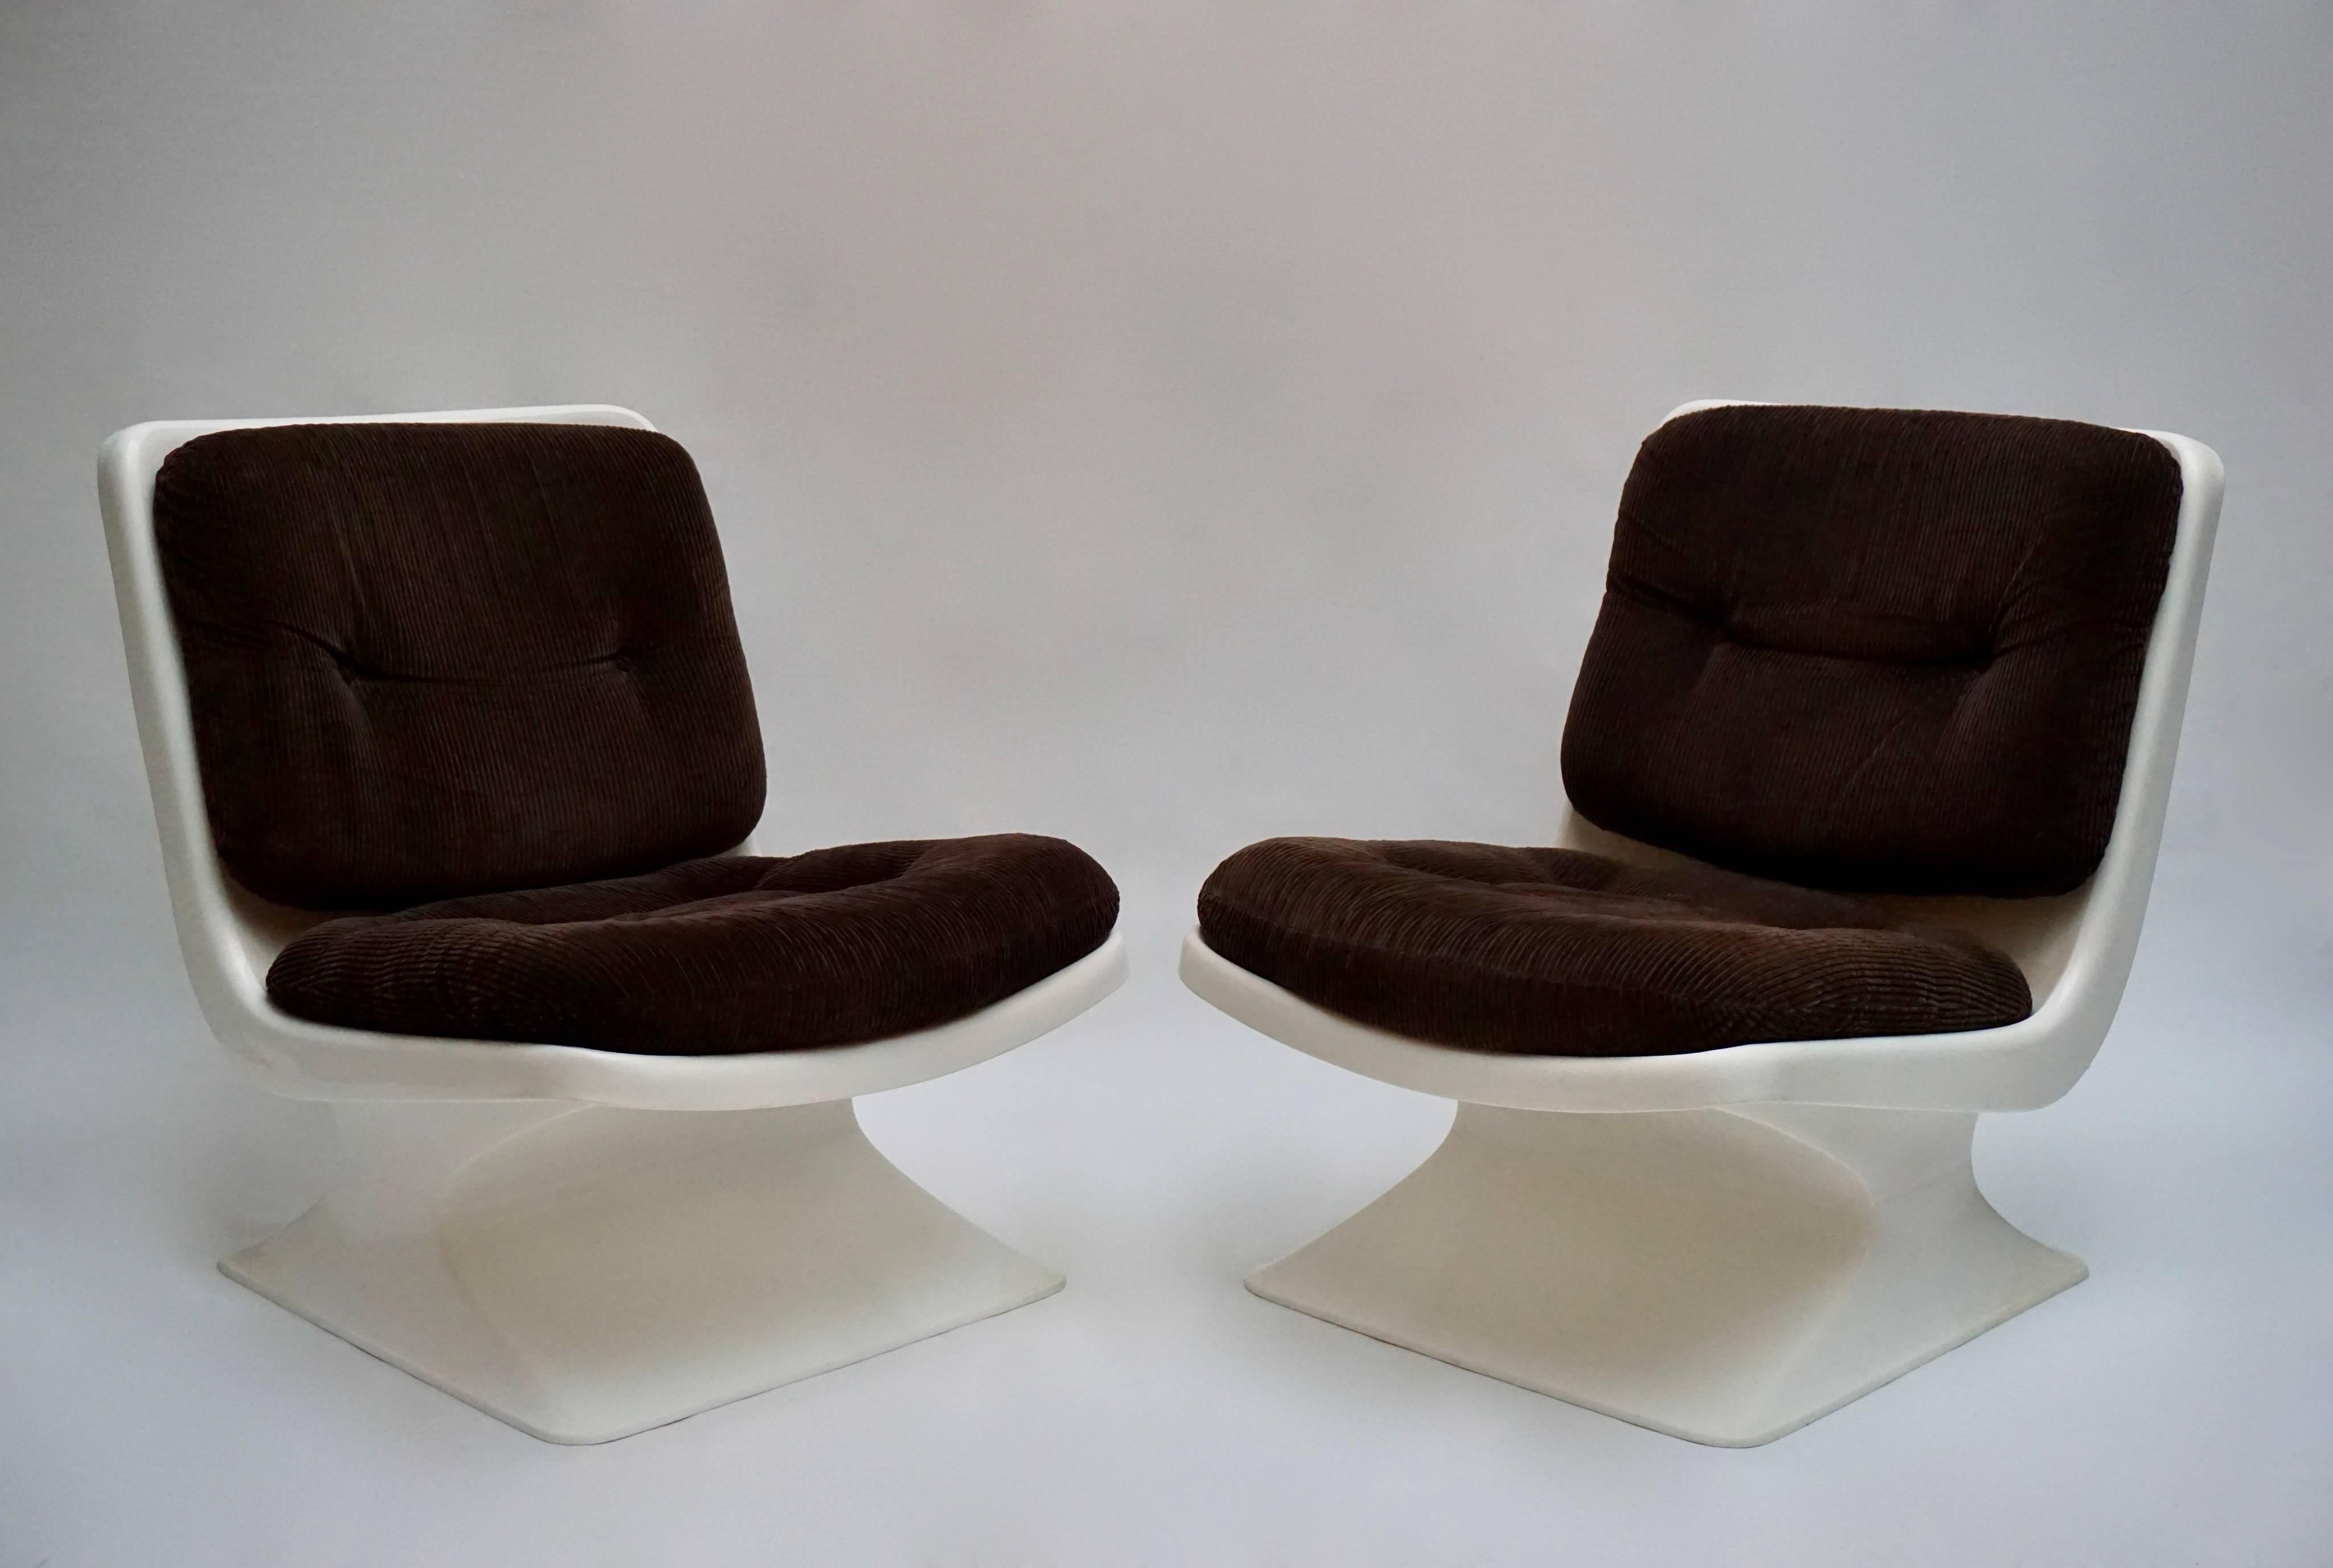 Belle et rare paire de chaises longues éditée par le Designer Albert Jacob de Grosfillex : Chaise longue (Hauteur d'assise 38 cm) en ABS avec coussins en tissu tissé marron.